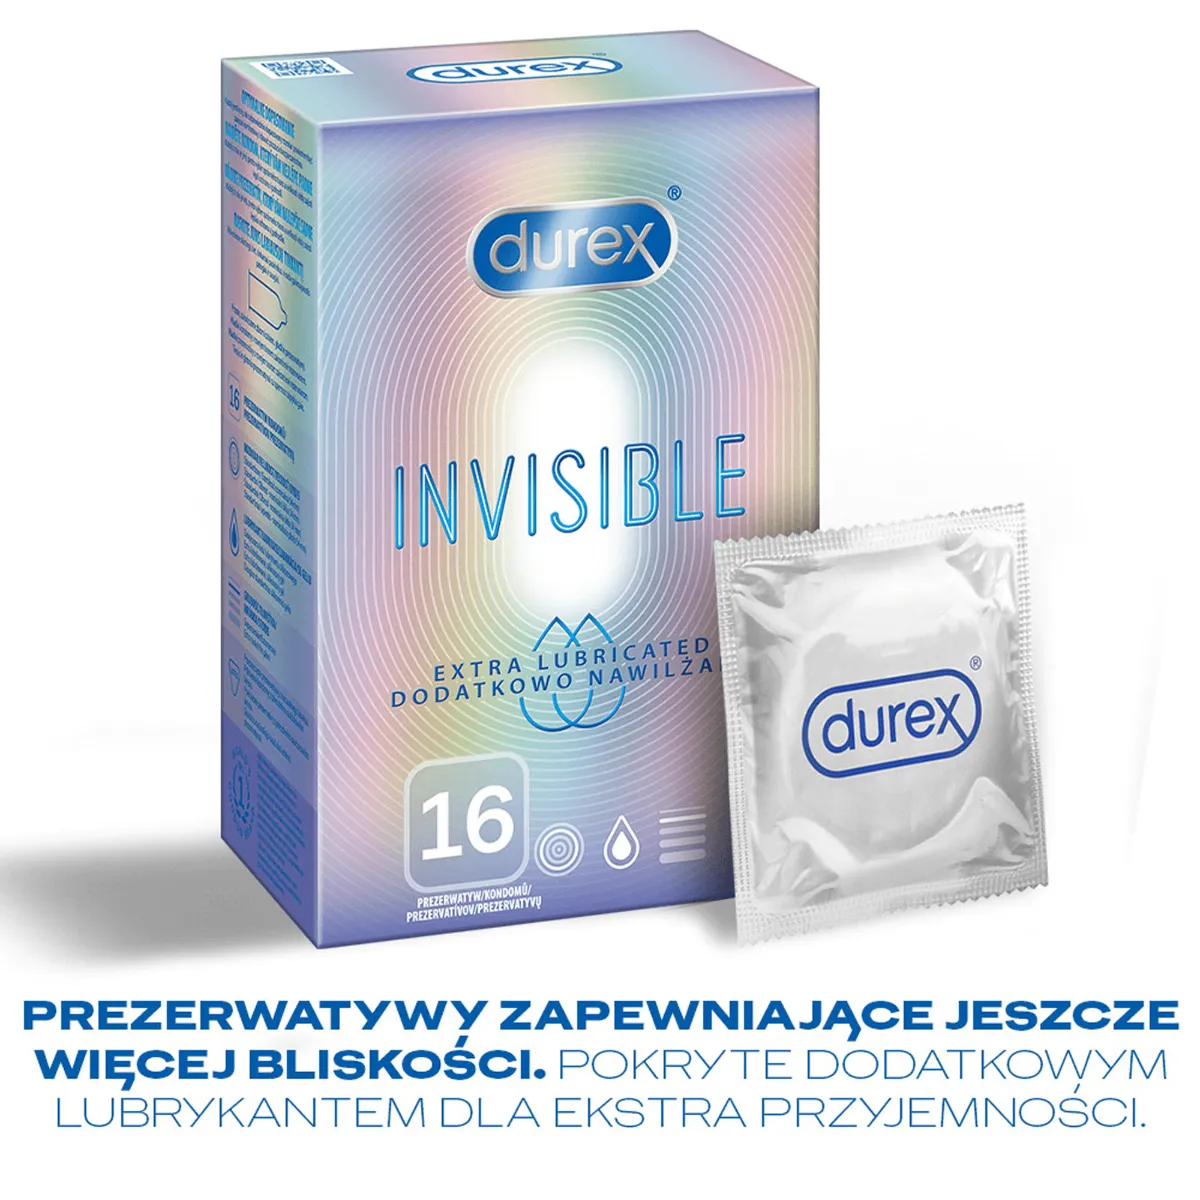 Durex Invisible, prezerwatywy, dodatkowo nawilżane, 16 sztuk 